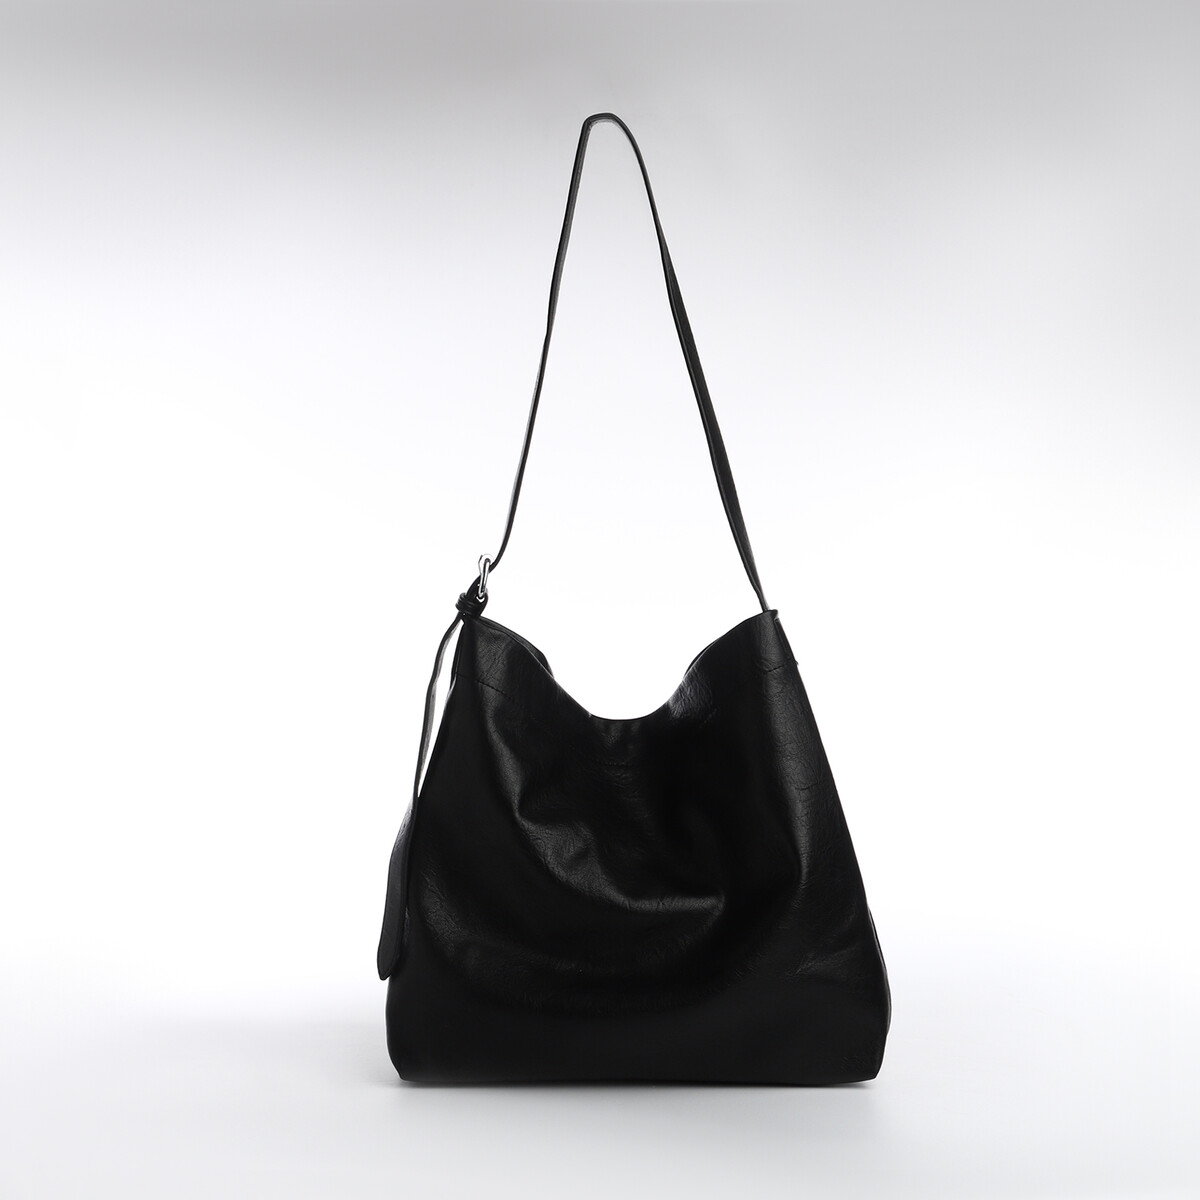 Сумка-мешок женская, на магните, косметичка, цвет черный сумка женская багет на магните